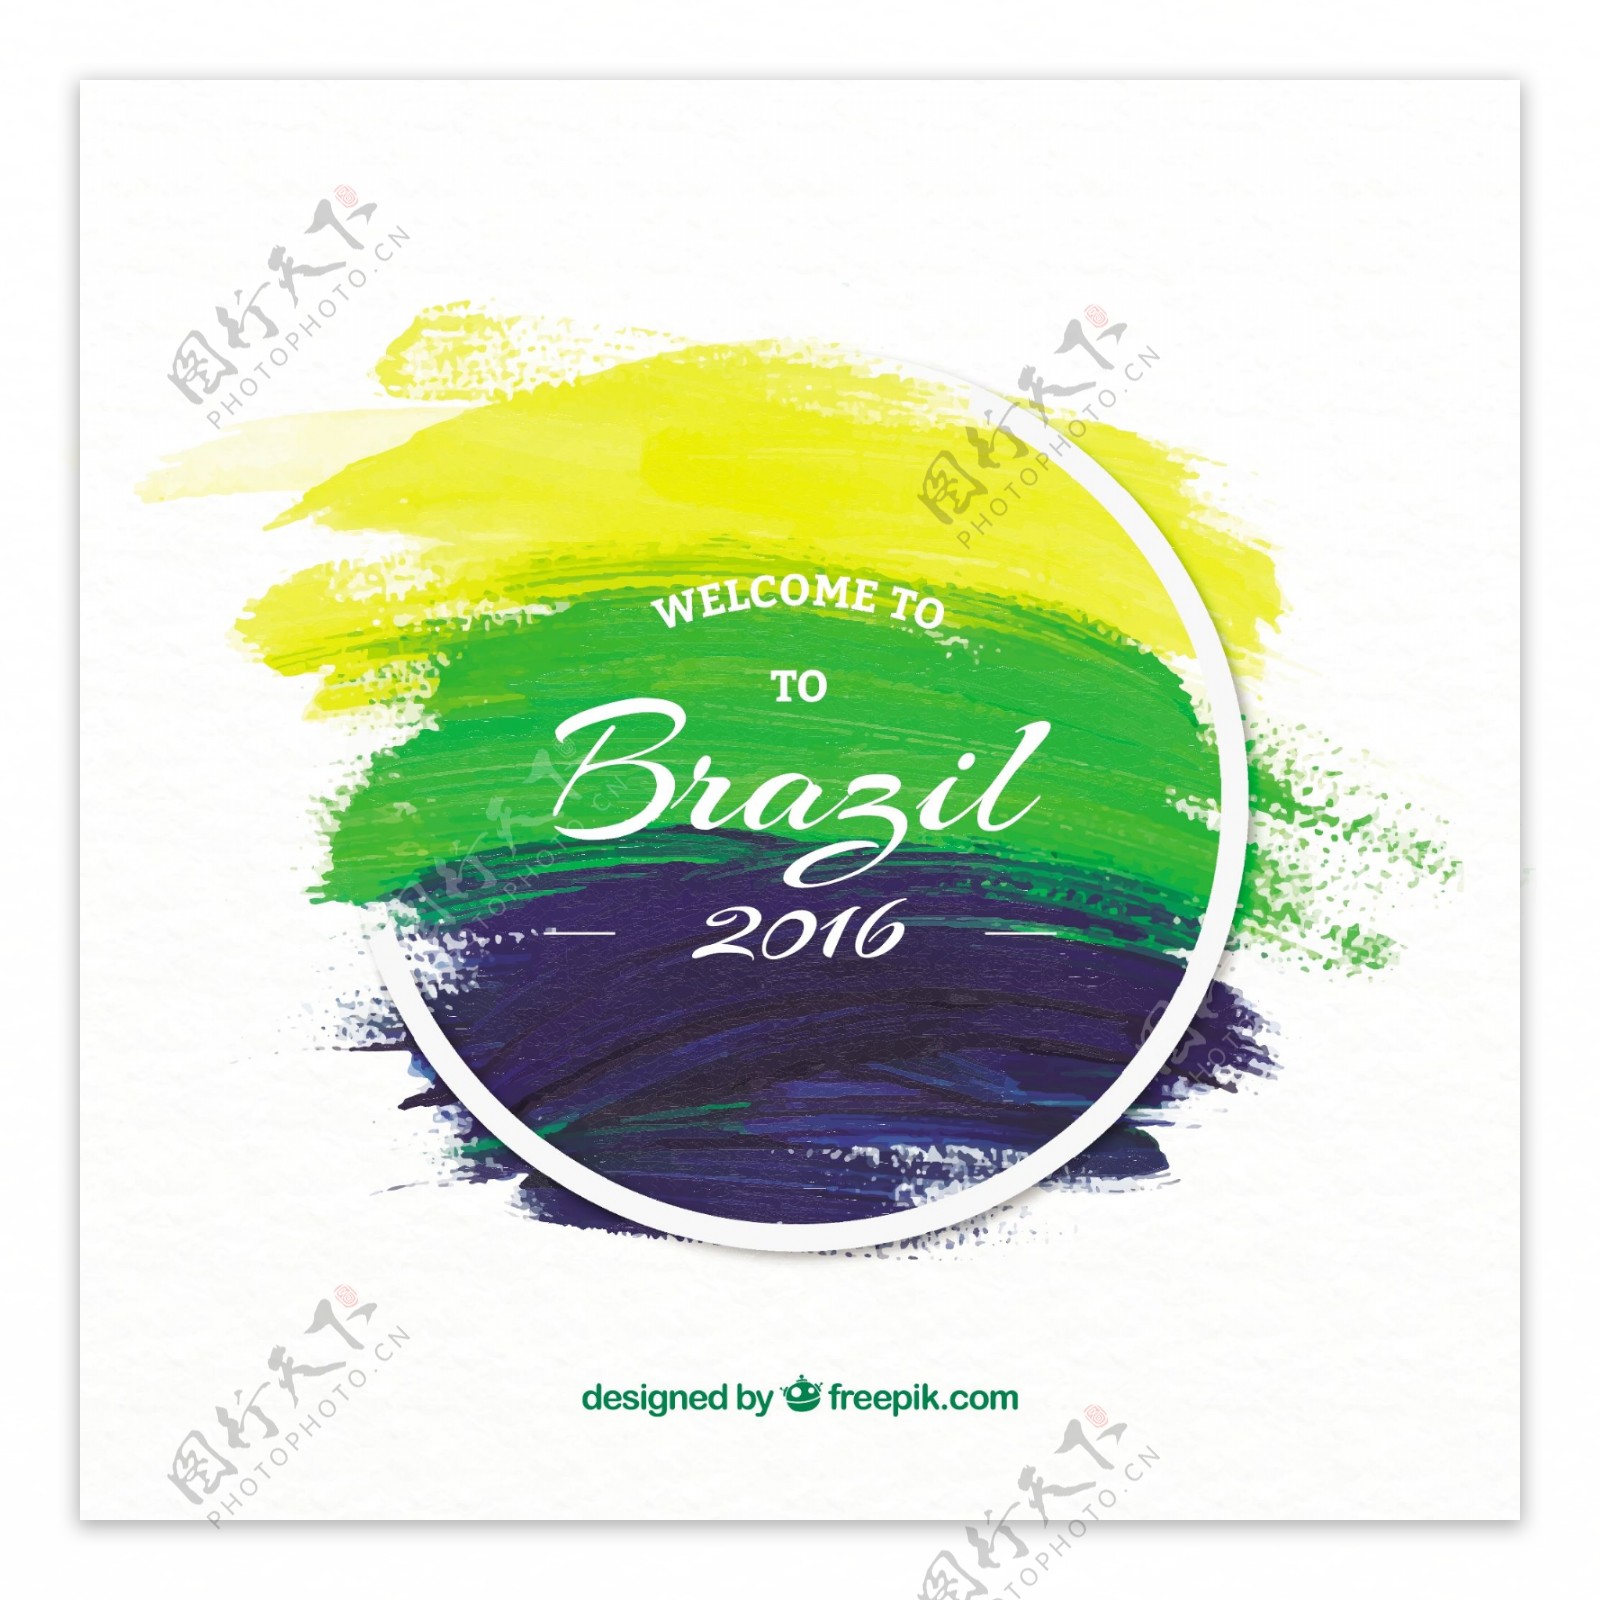 巴西奥运会2016毛笔笔刷背景矢